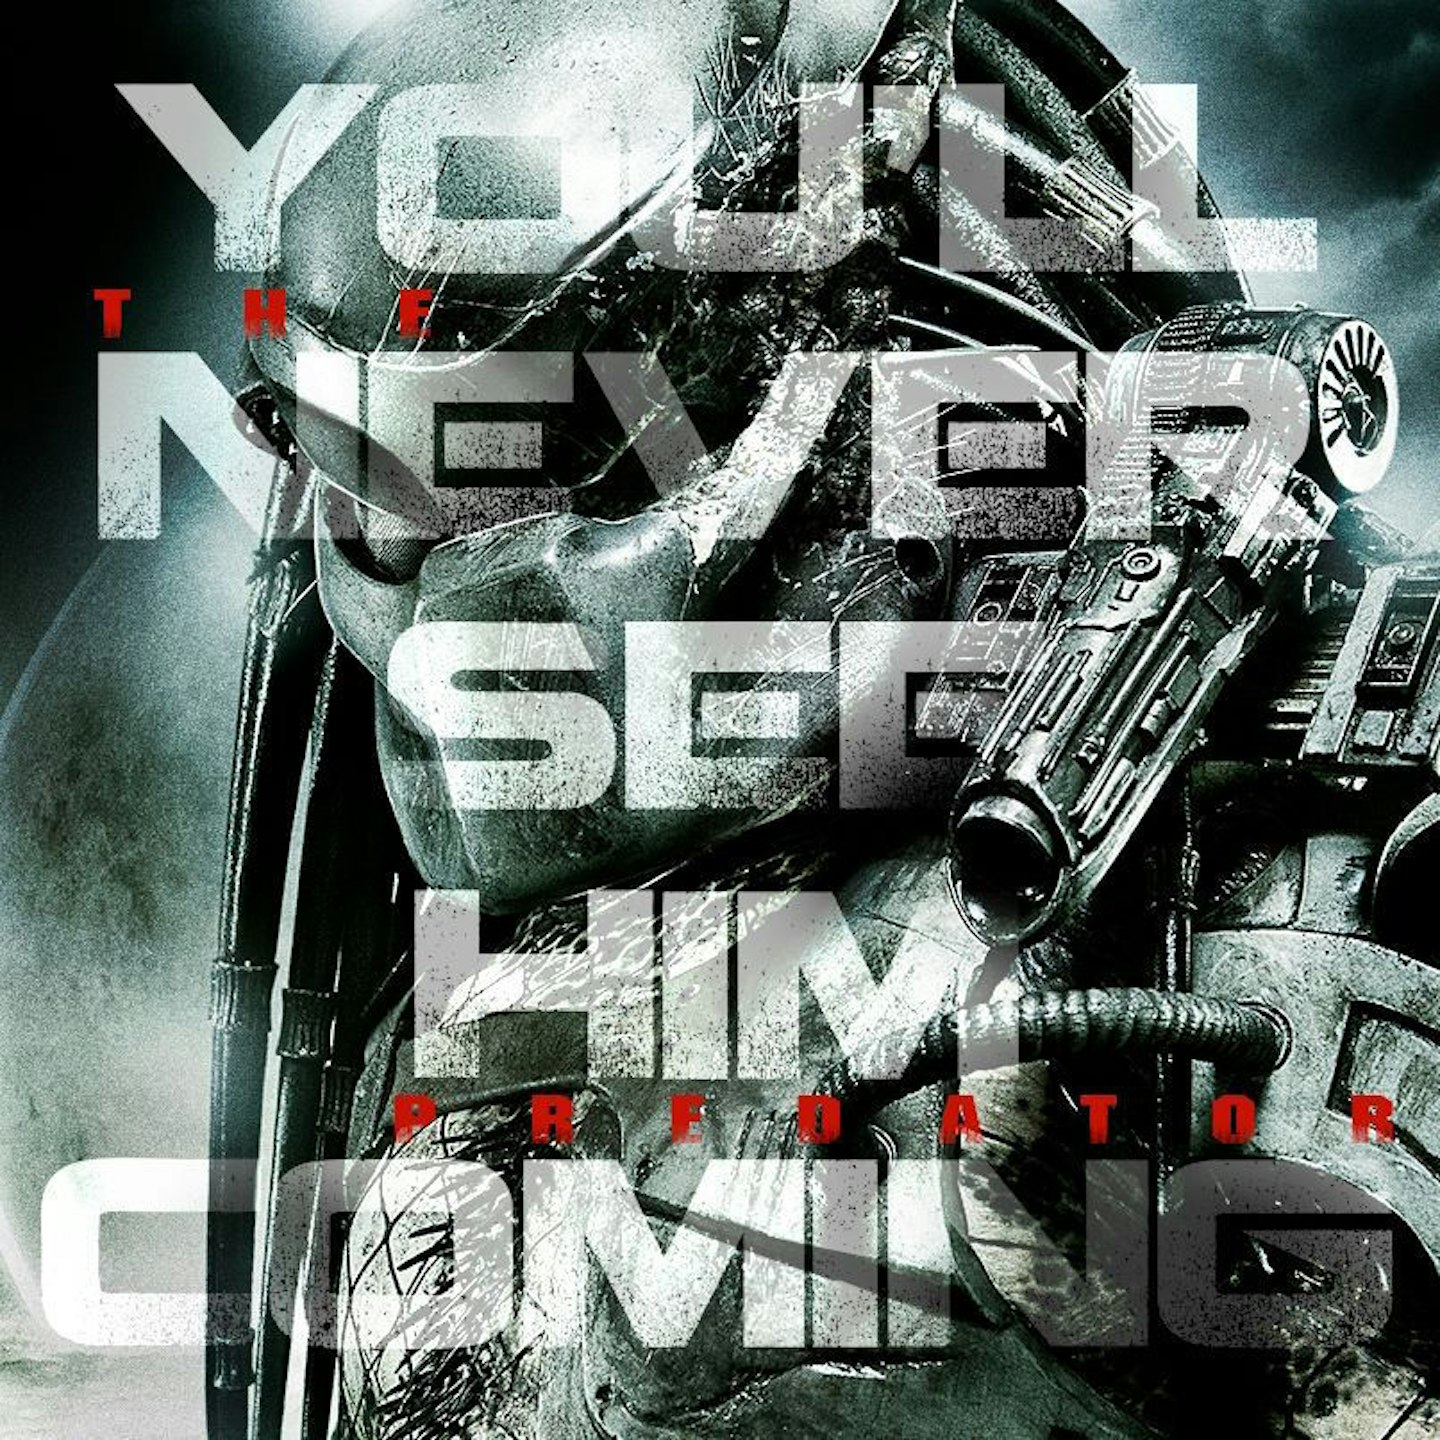 Teaser image for Shane Black's The Predator